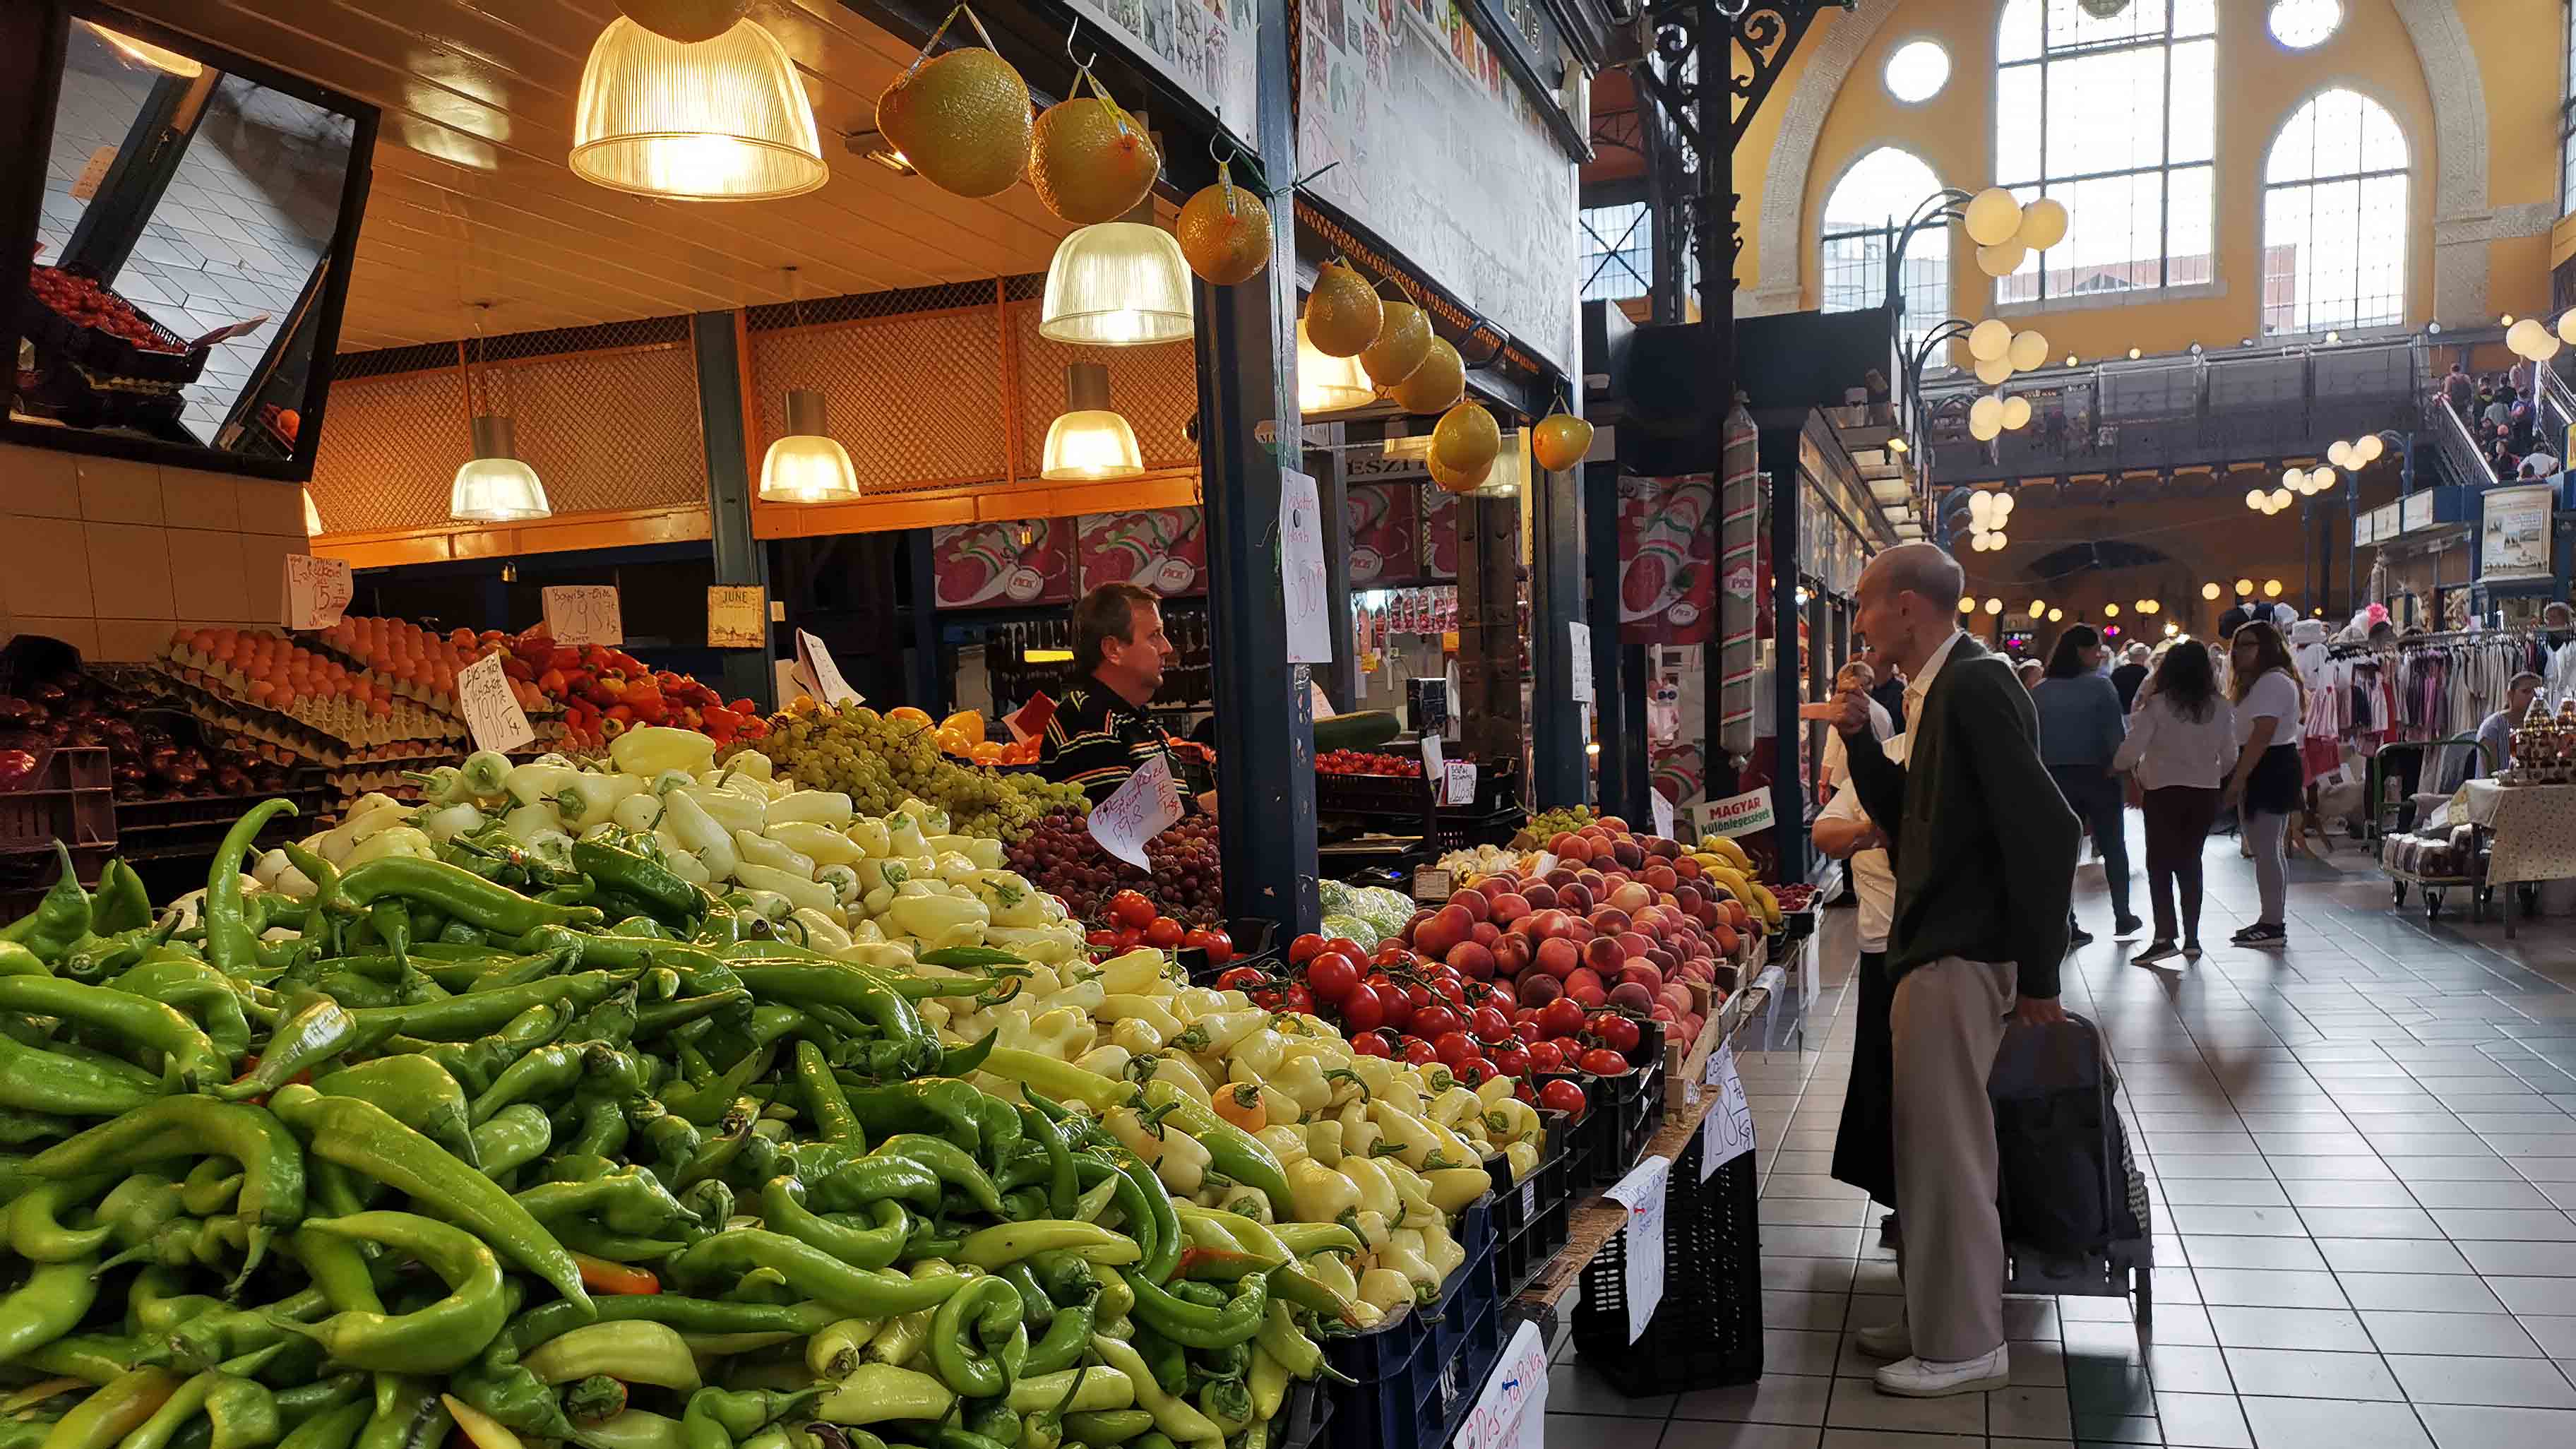 Grande Halle Budapest Fővám tér commerce de légumes fruits